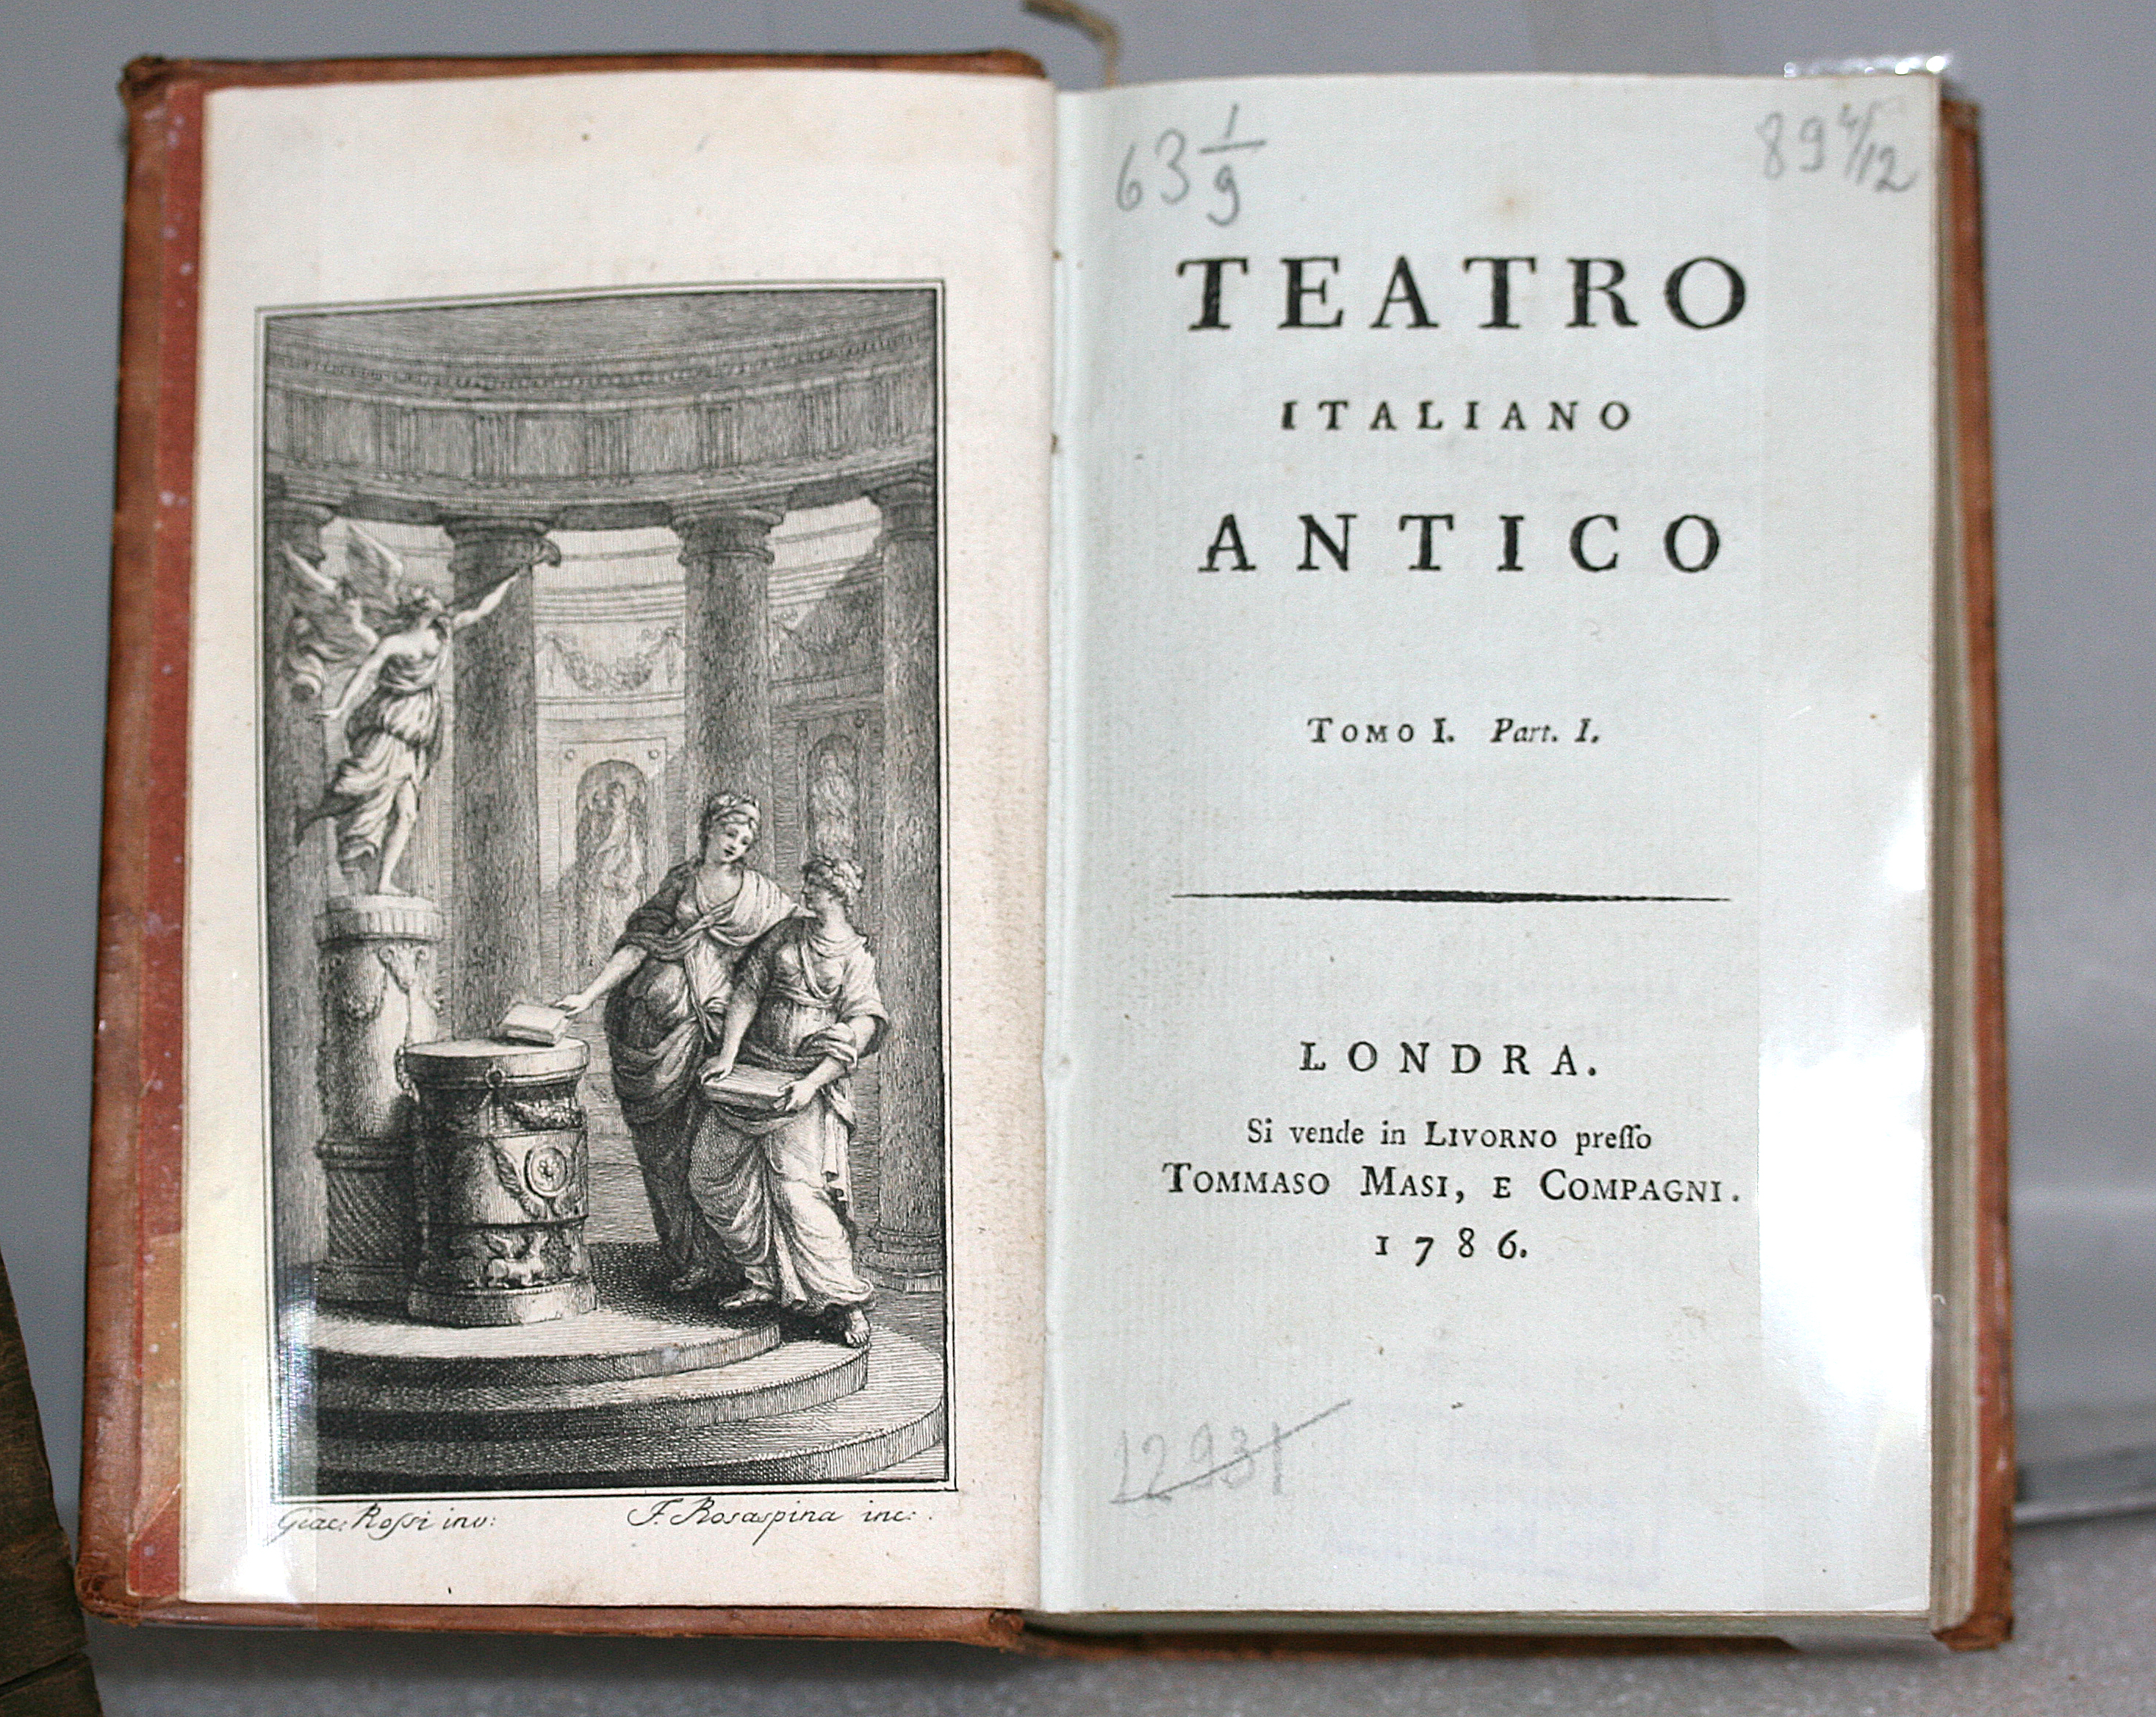 Итальянский античный театр. Т. 1. – Лондон, 1786